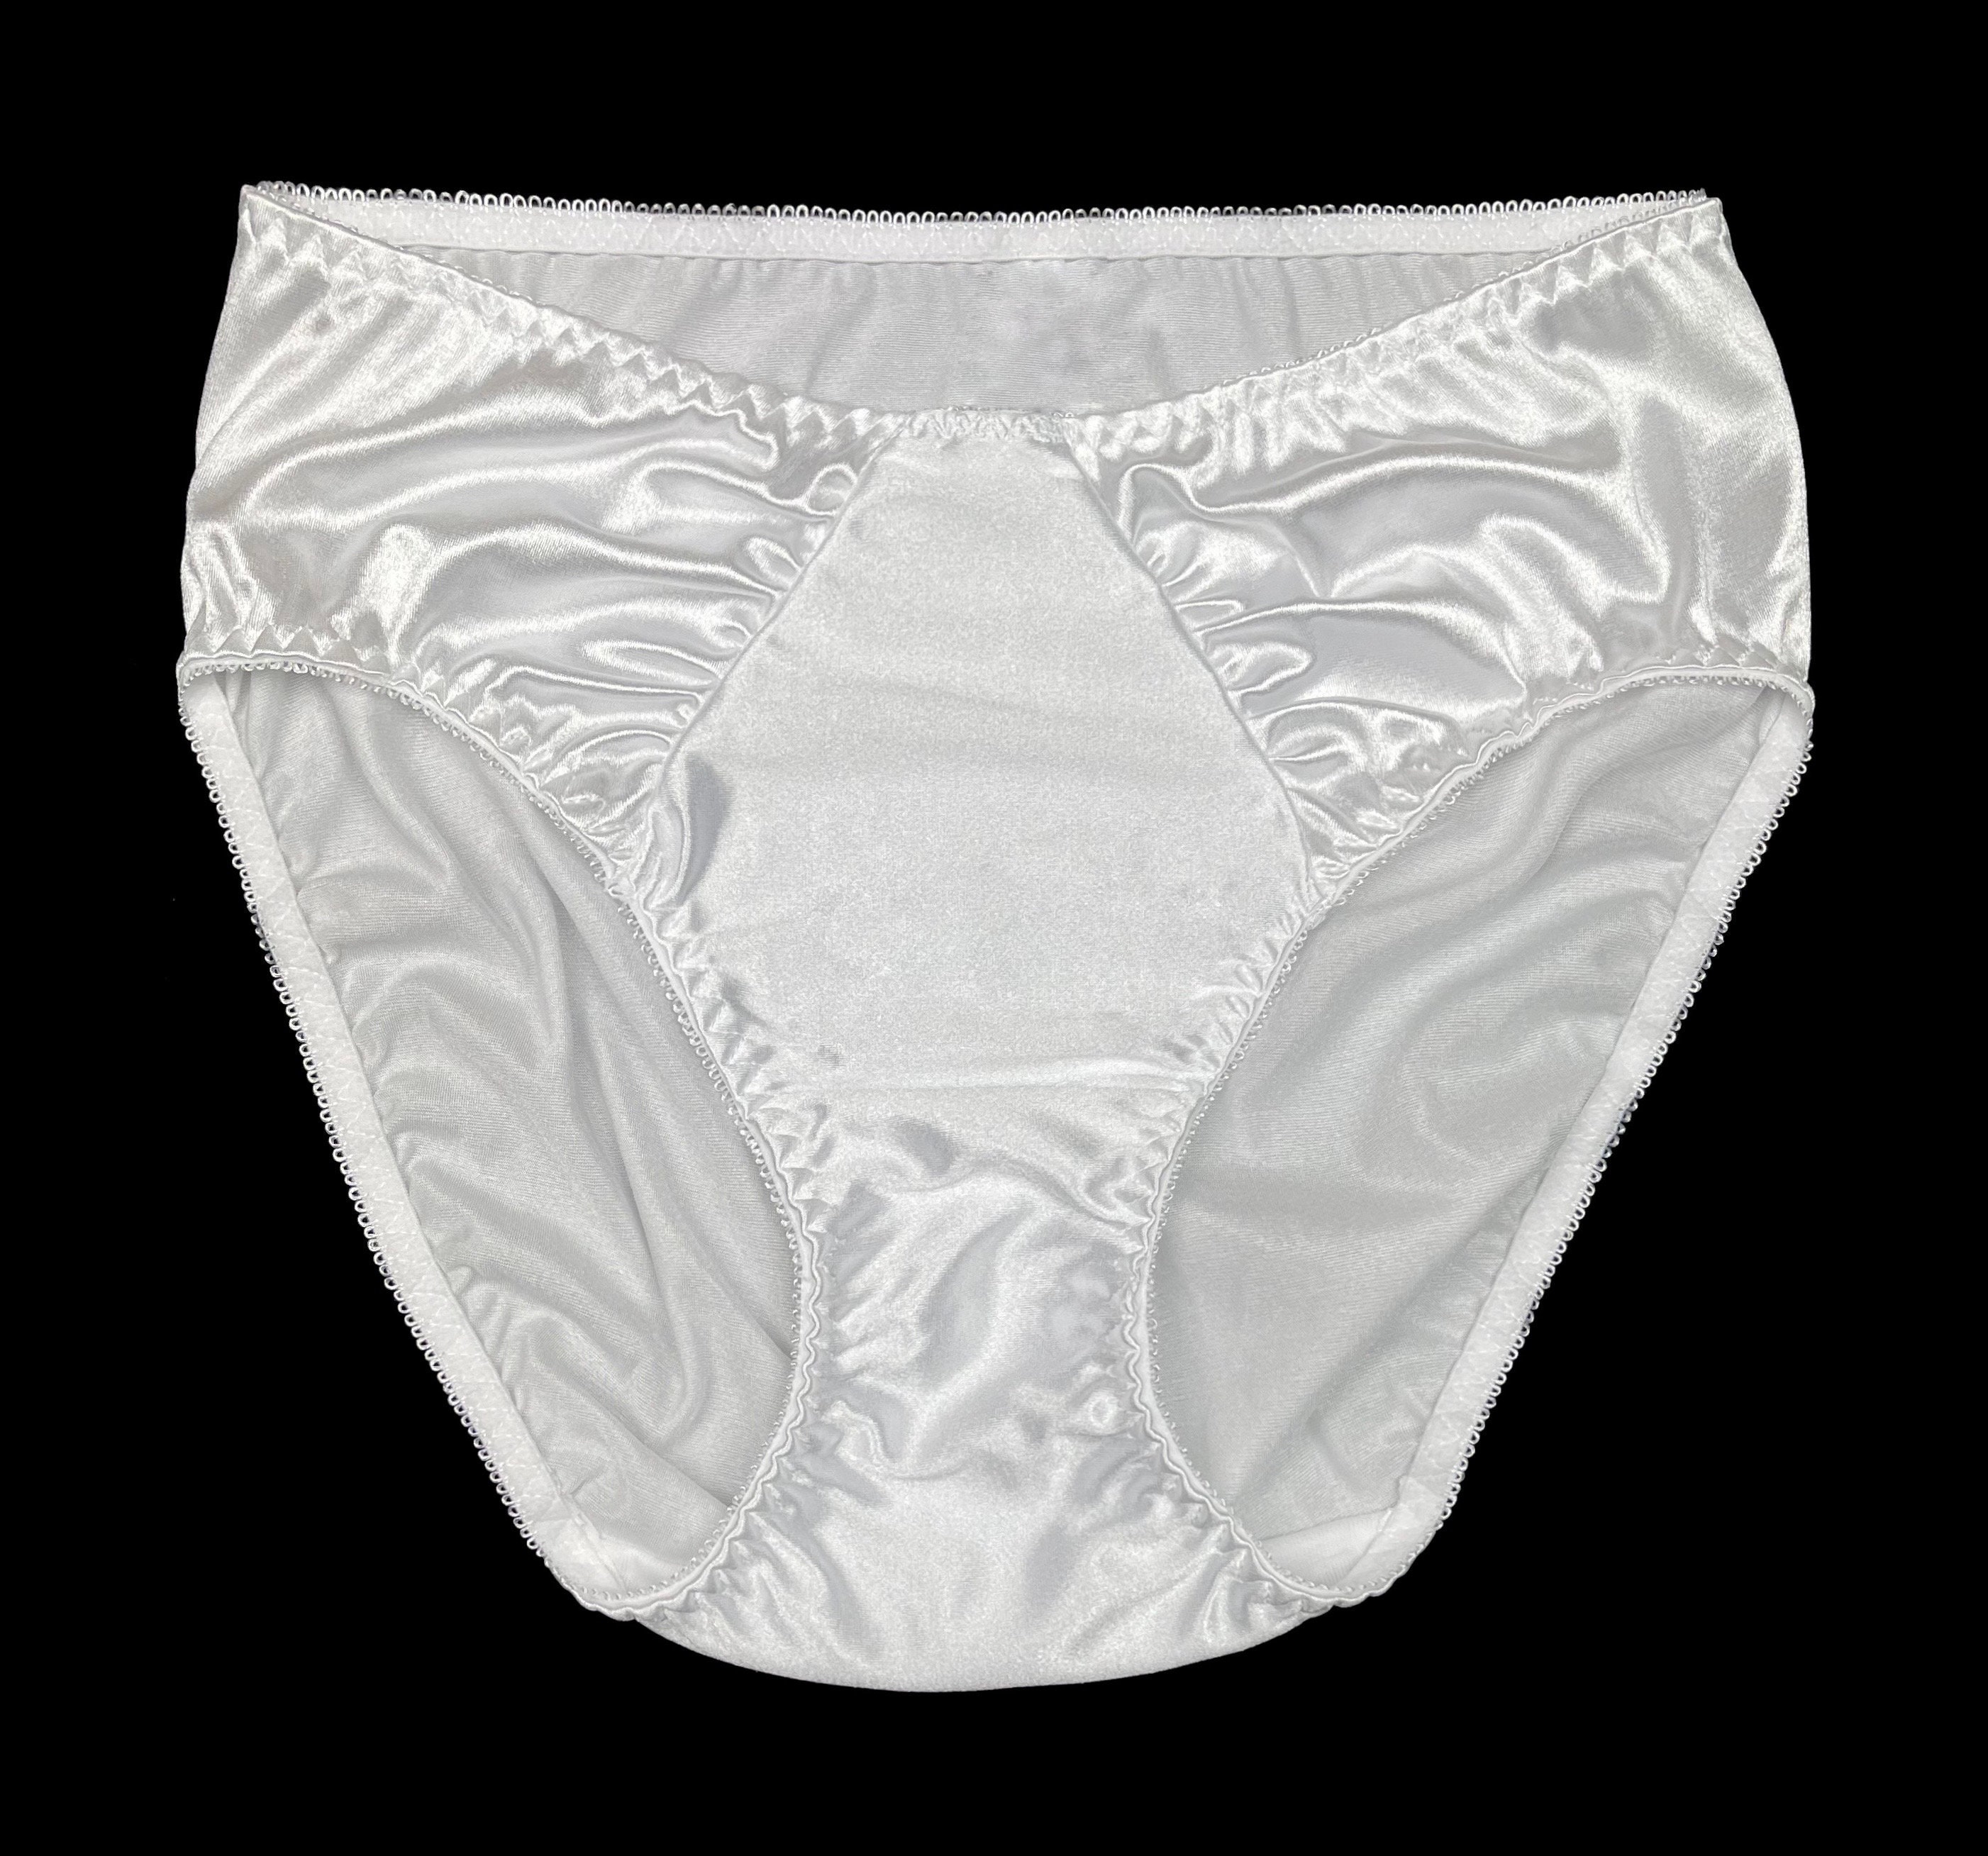 Vintage 'SUCK' Deadstock 70's Unisex Mens Underwear Brief Boyfriend Shorts